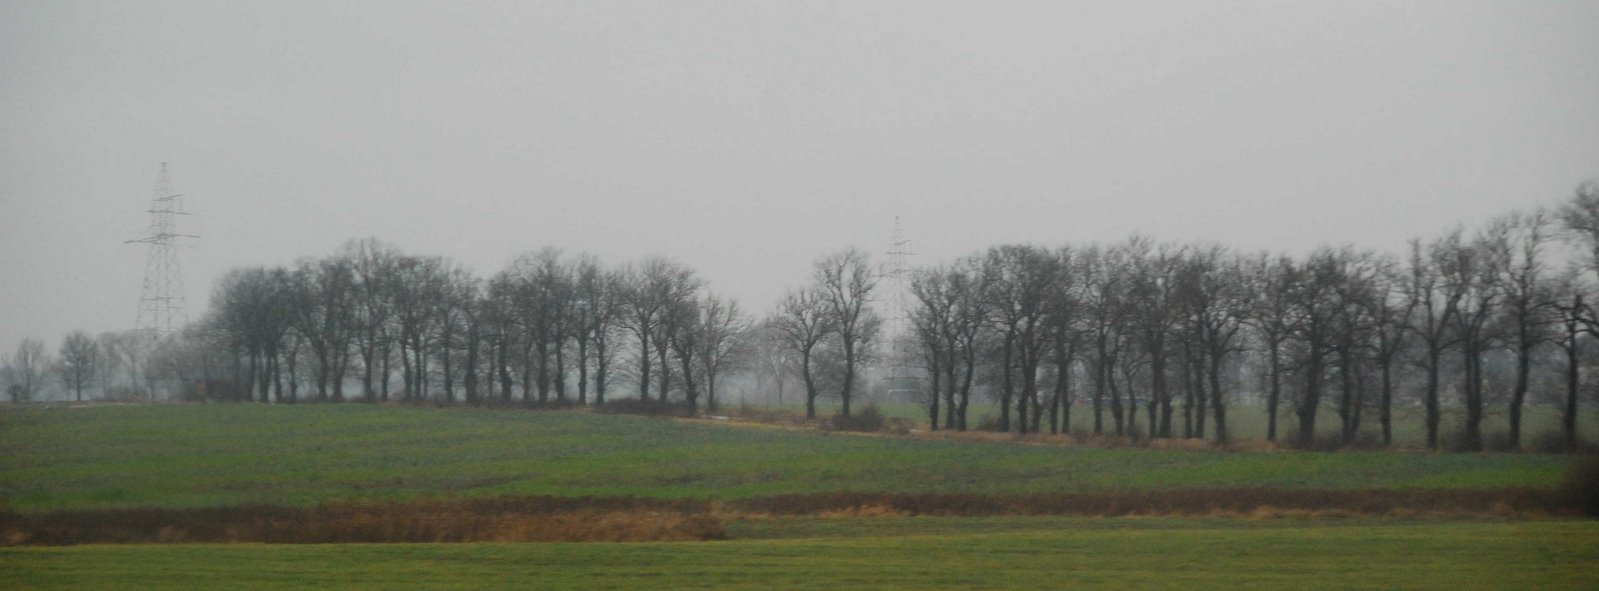 [December+wet+fields,+Wielkopolska.jpg]